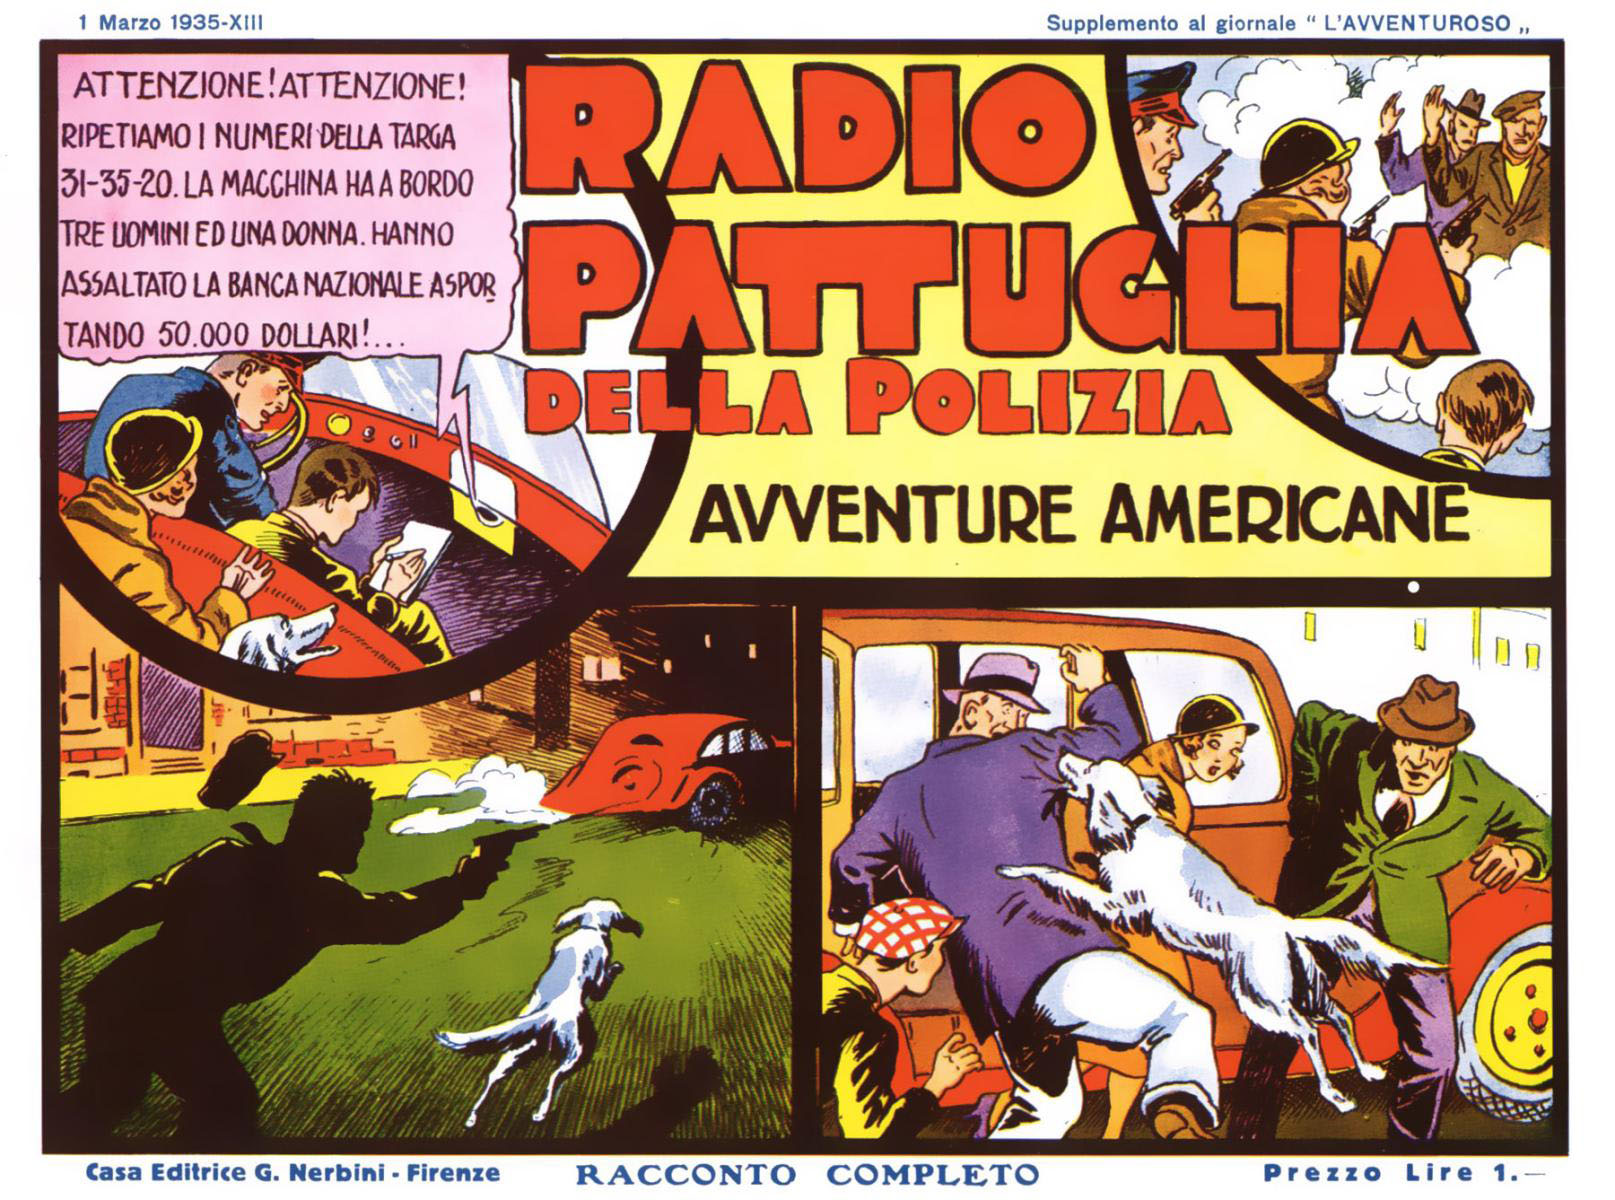 Radio Pattuglia 1935